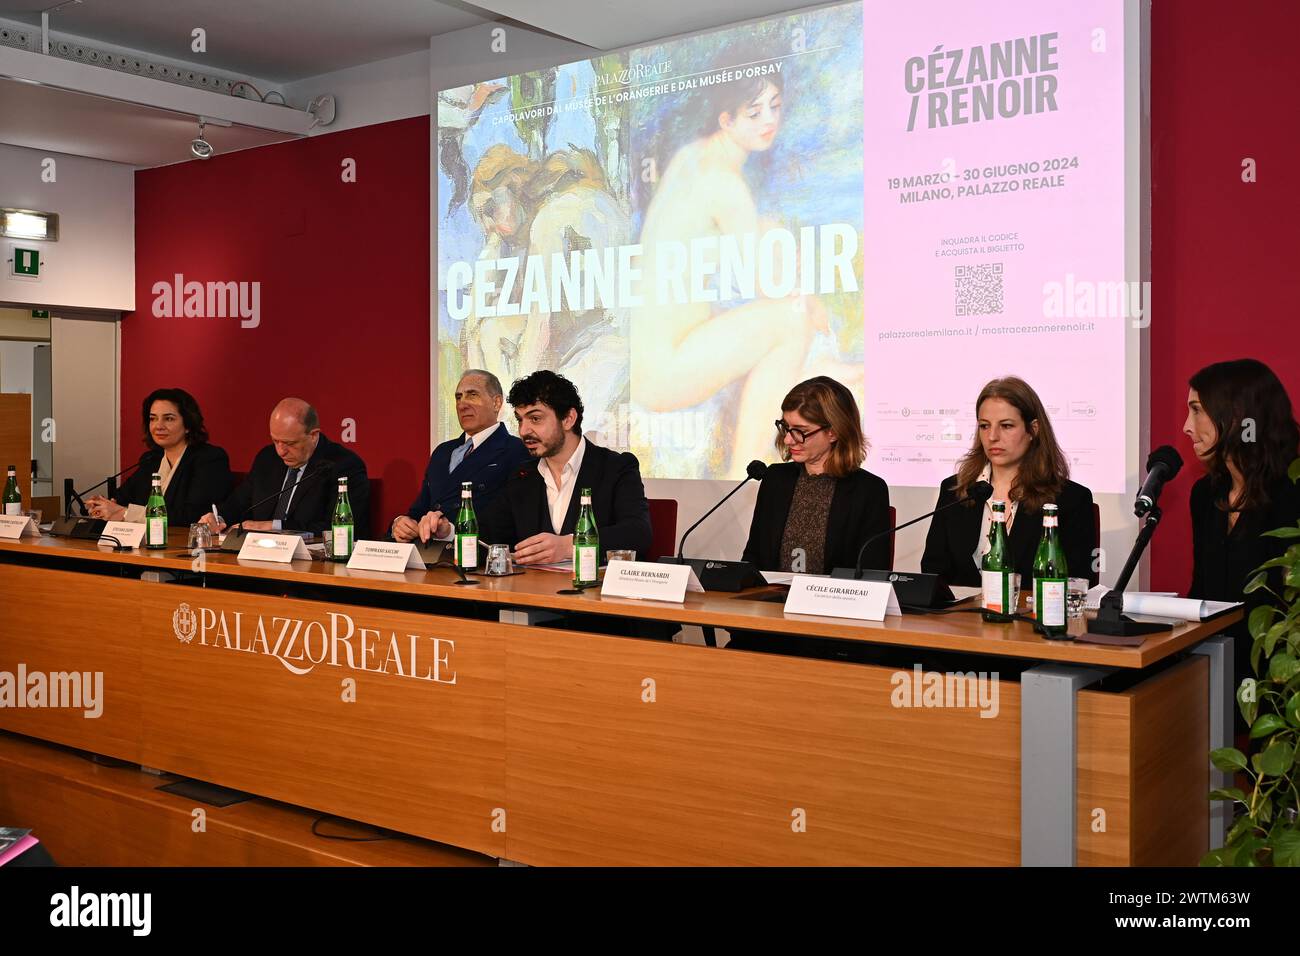 Milan, Italie présentation de l'exposition Cézanne/Renoir avec des chefs-d'œuvre du Musée de l'Orangerie et du Musée d'Orsay au Palazzo Reale sur la photo : Conférence institutionnelle Banque D'Images